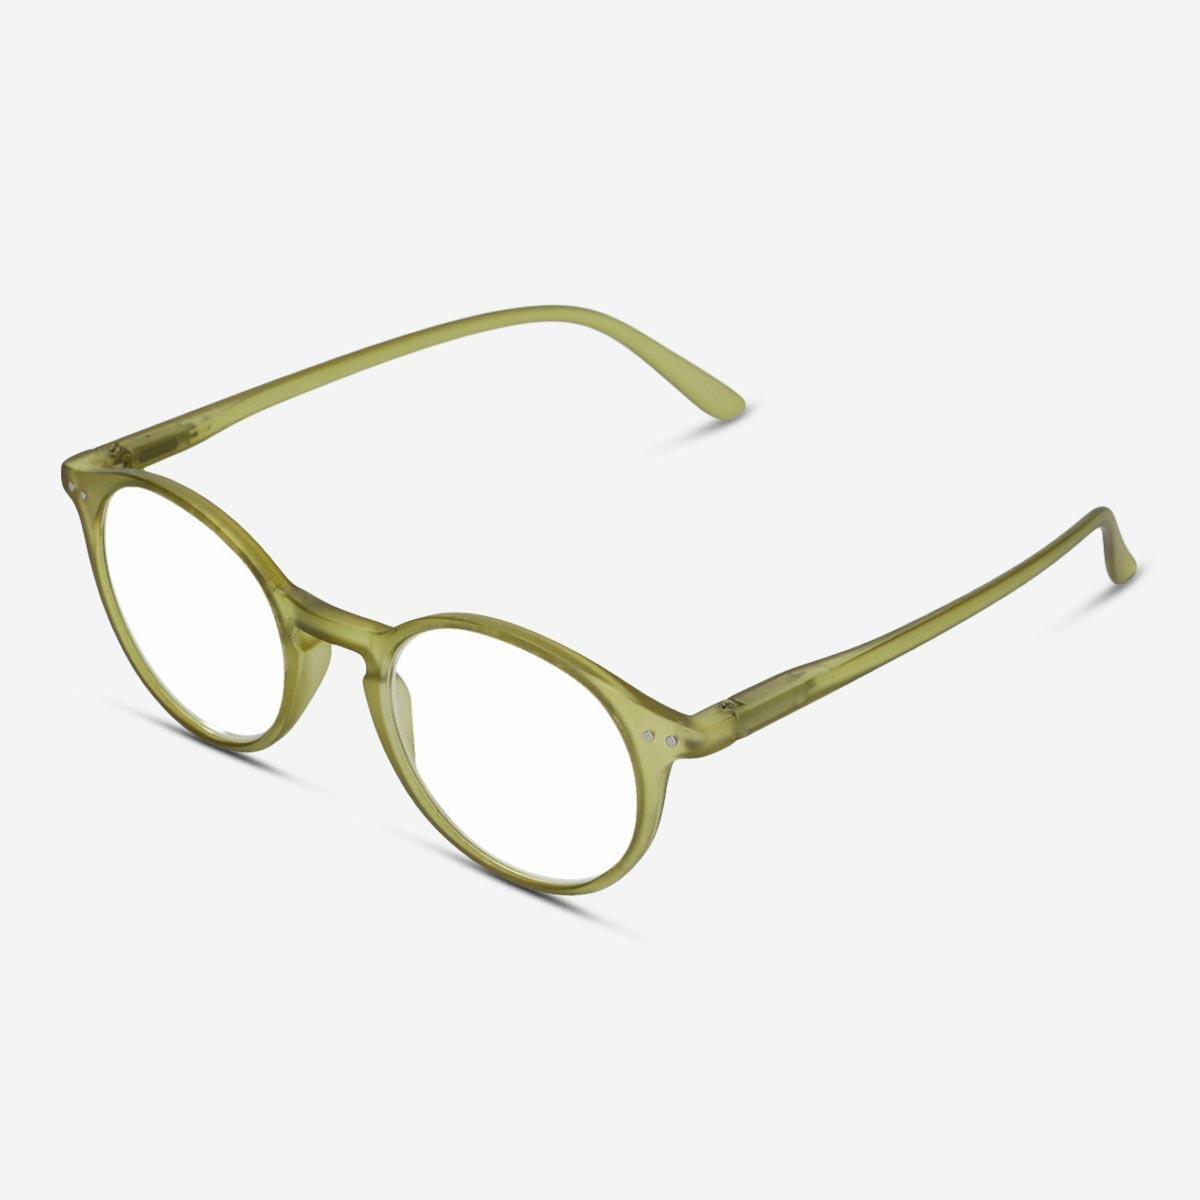 Green reading glasses. + 1.5